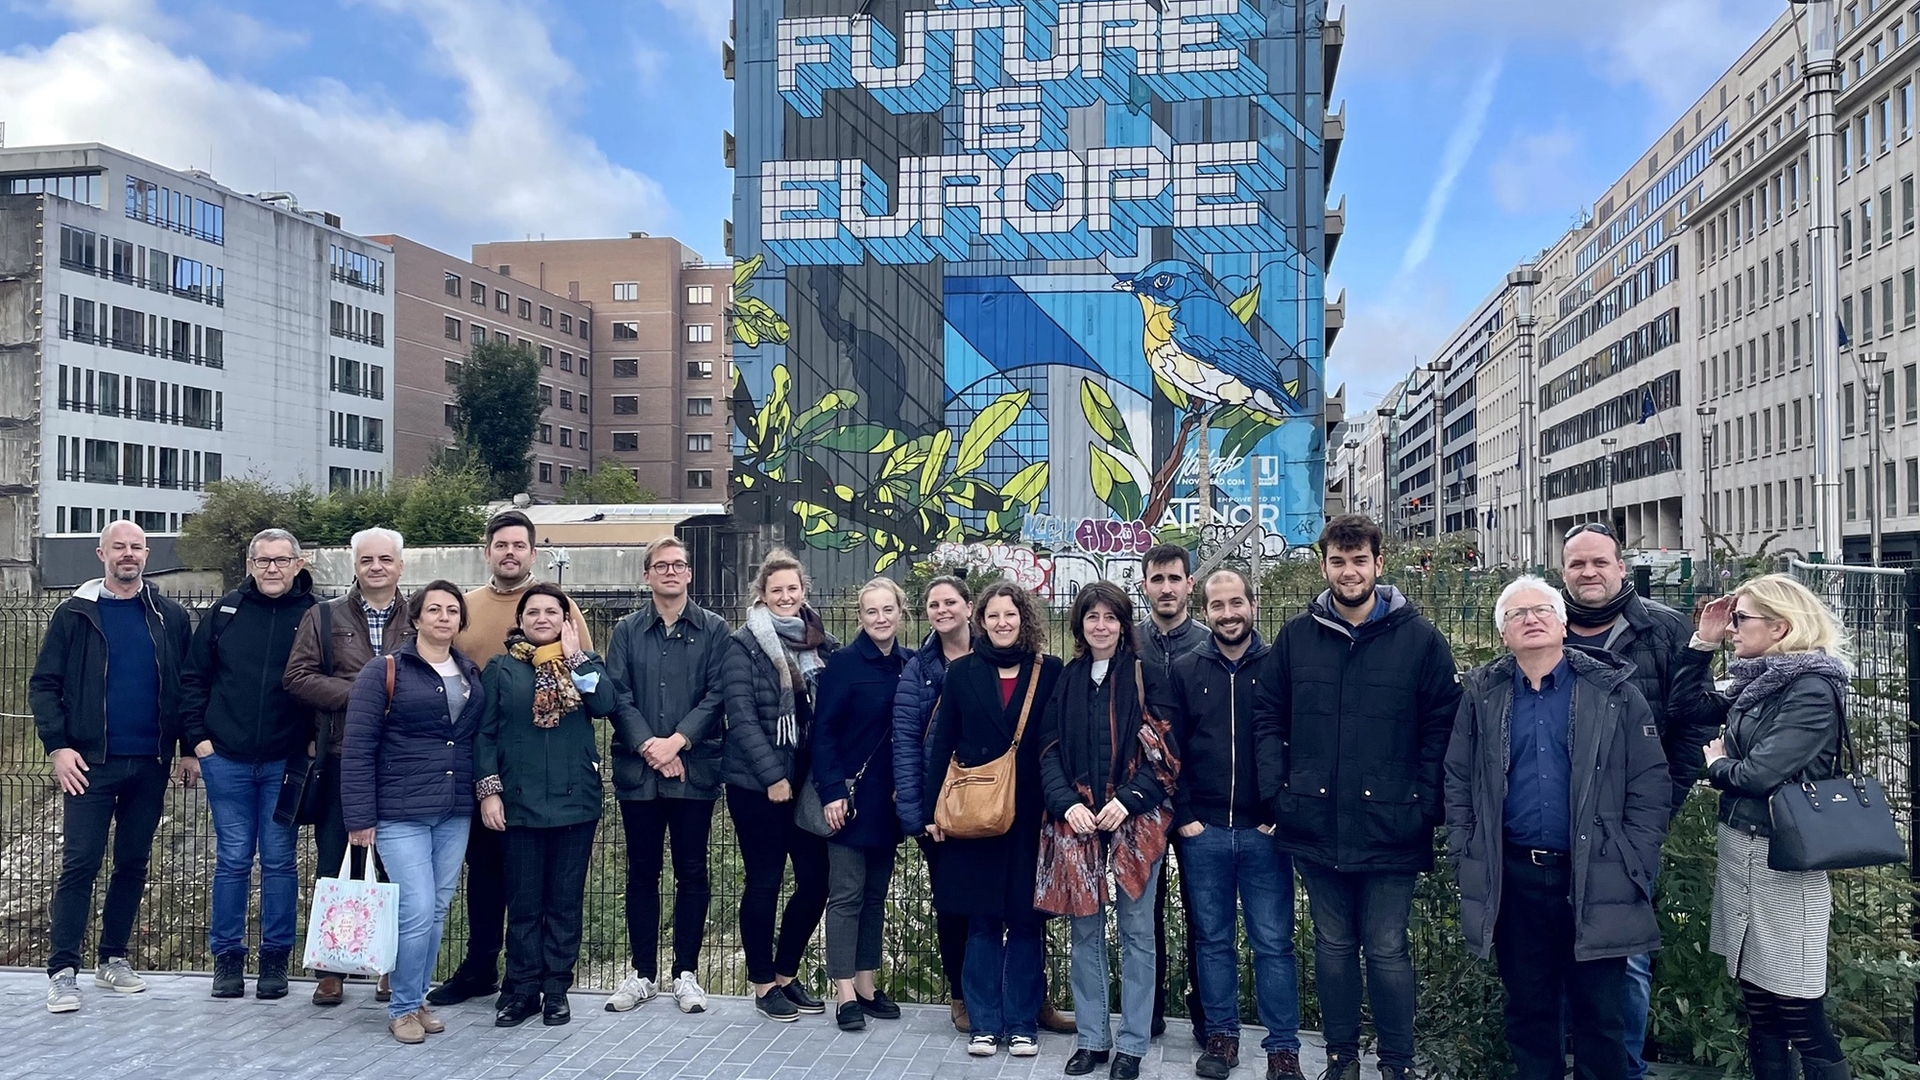 Kvinner og menn står foran en bygning i Brussel med teksten "The Future is Europe" tagget på veggen som en maleri.